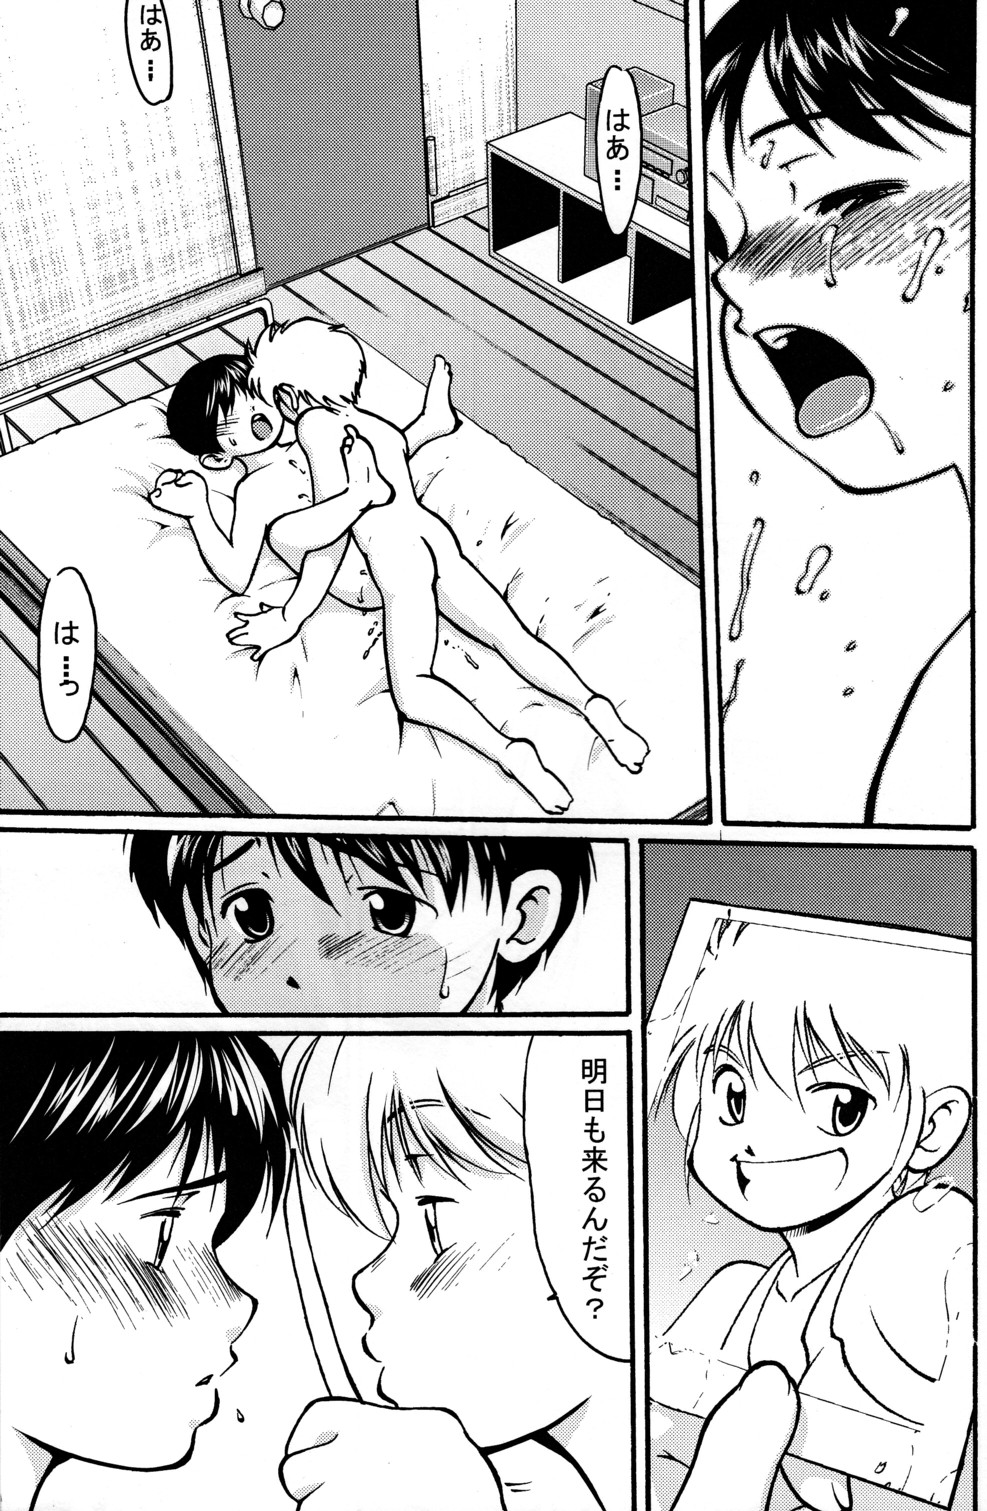 [Yuuji] Boys Life 1 page 23 full